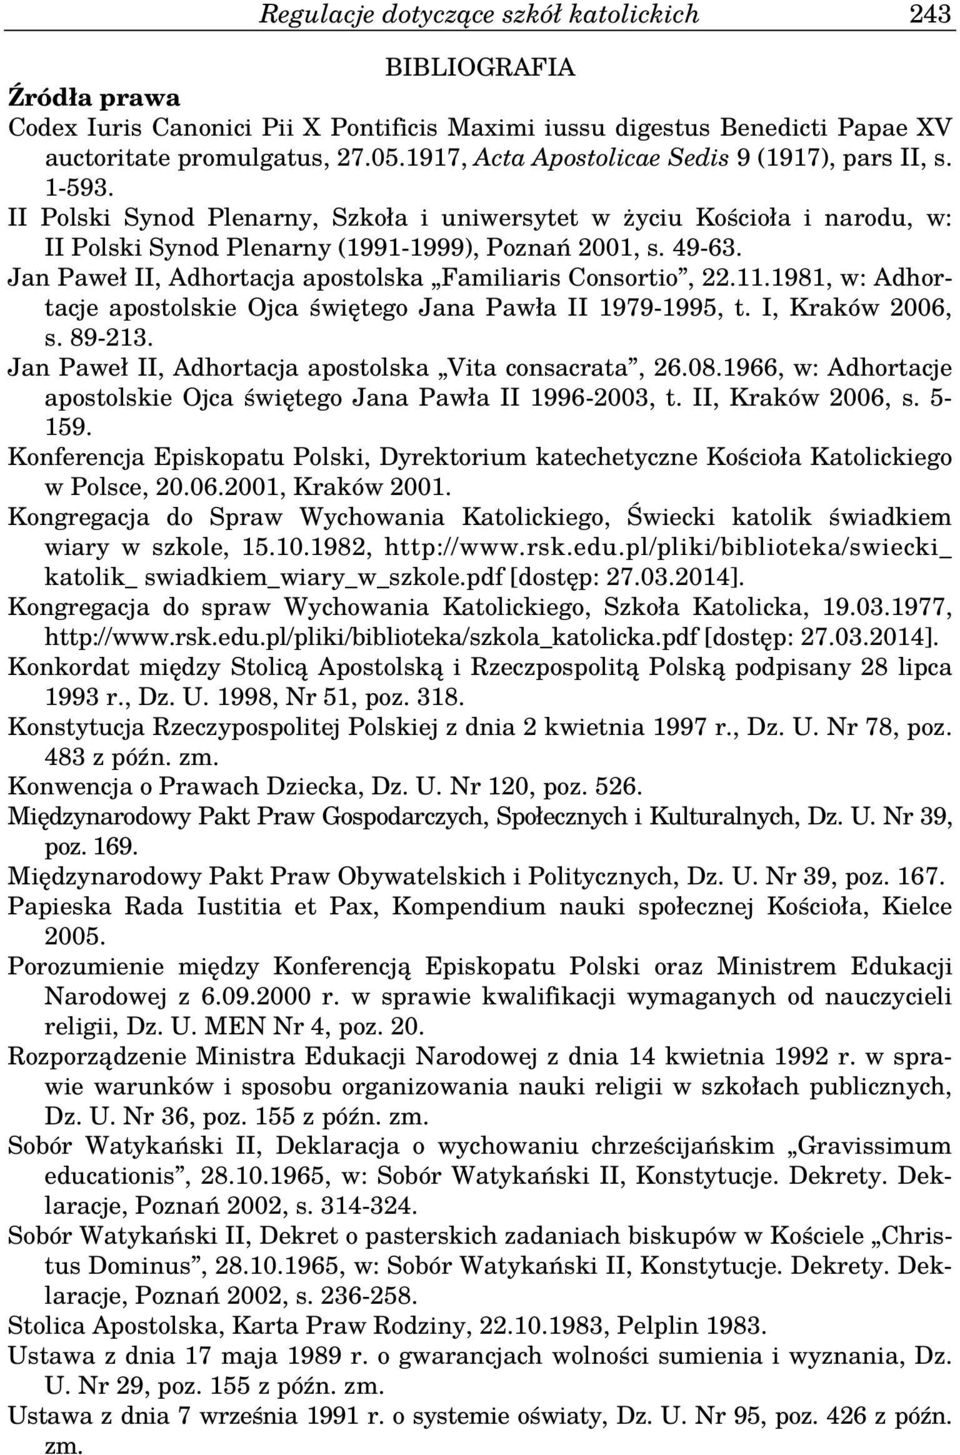 Jan Paweł II, Adhortacja apostolska Familiaris Consortio, 22.11.1981, w: Adhortacje apostolskie Ojca świętego Jana Pawła II 1979-1995, t. I, Kraków 2006, s. 89-213.